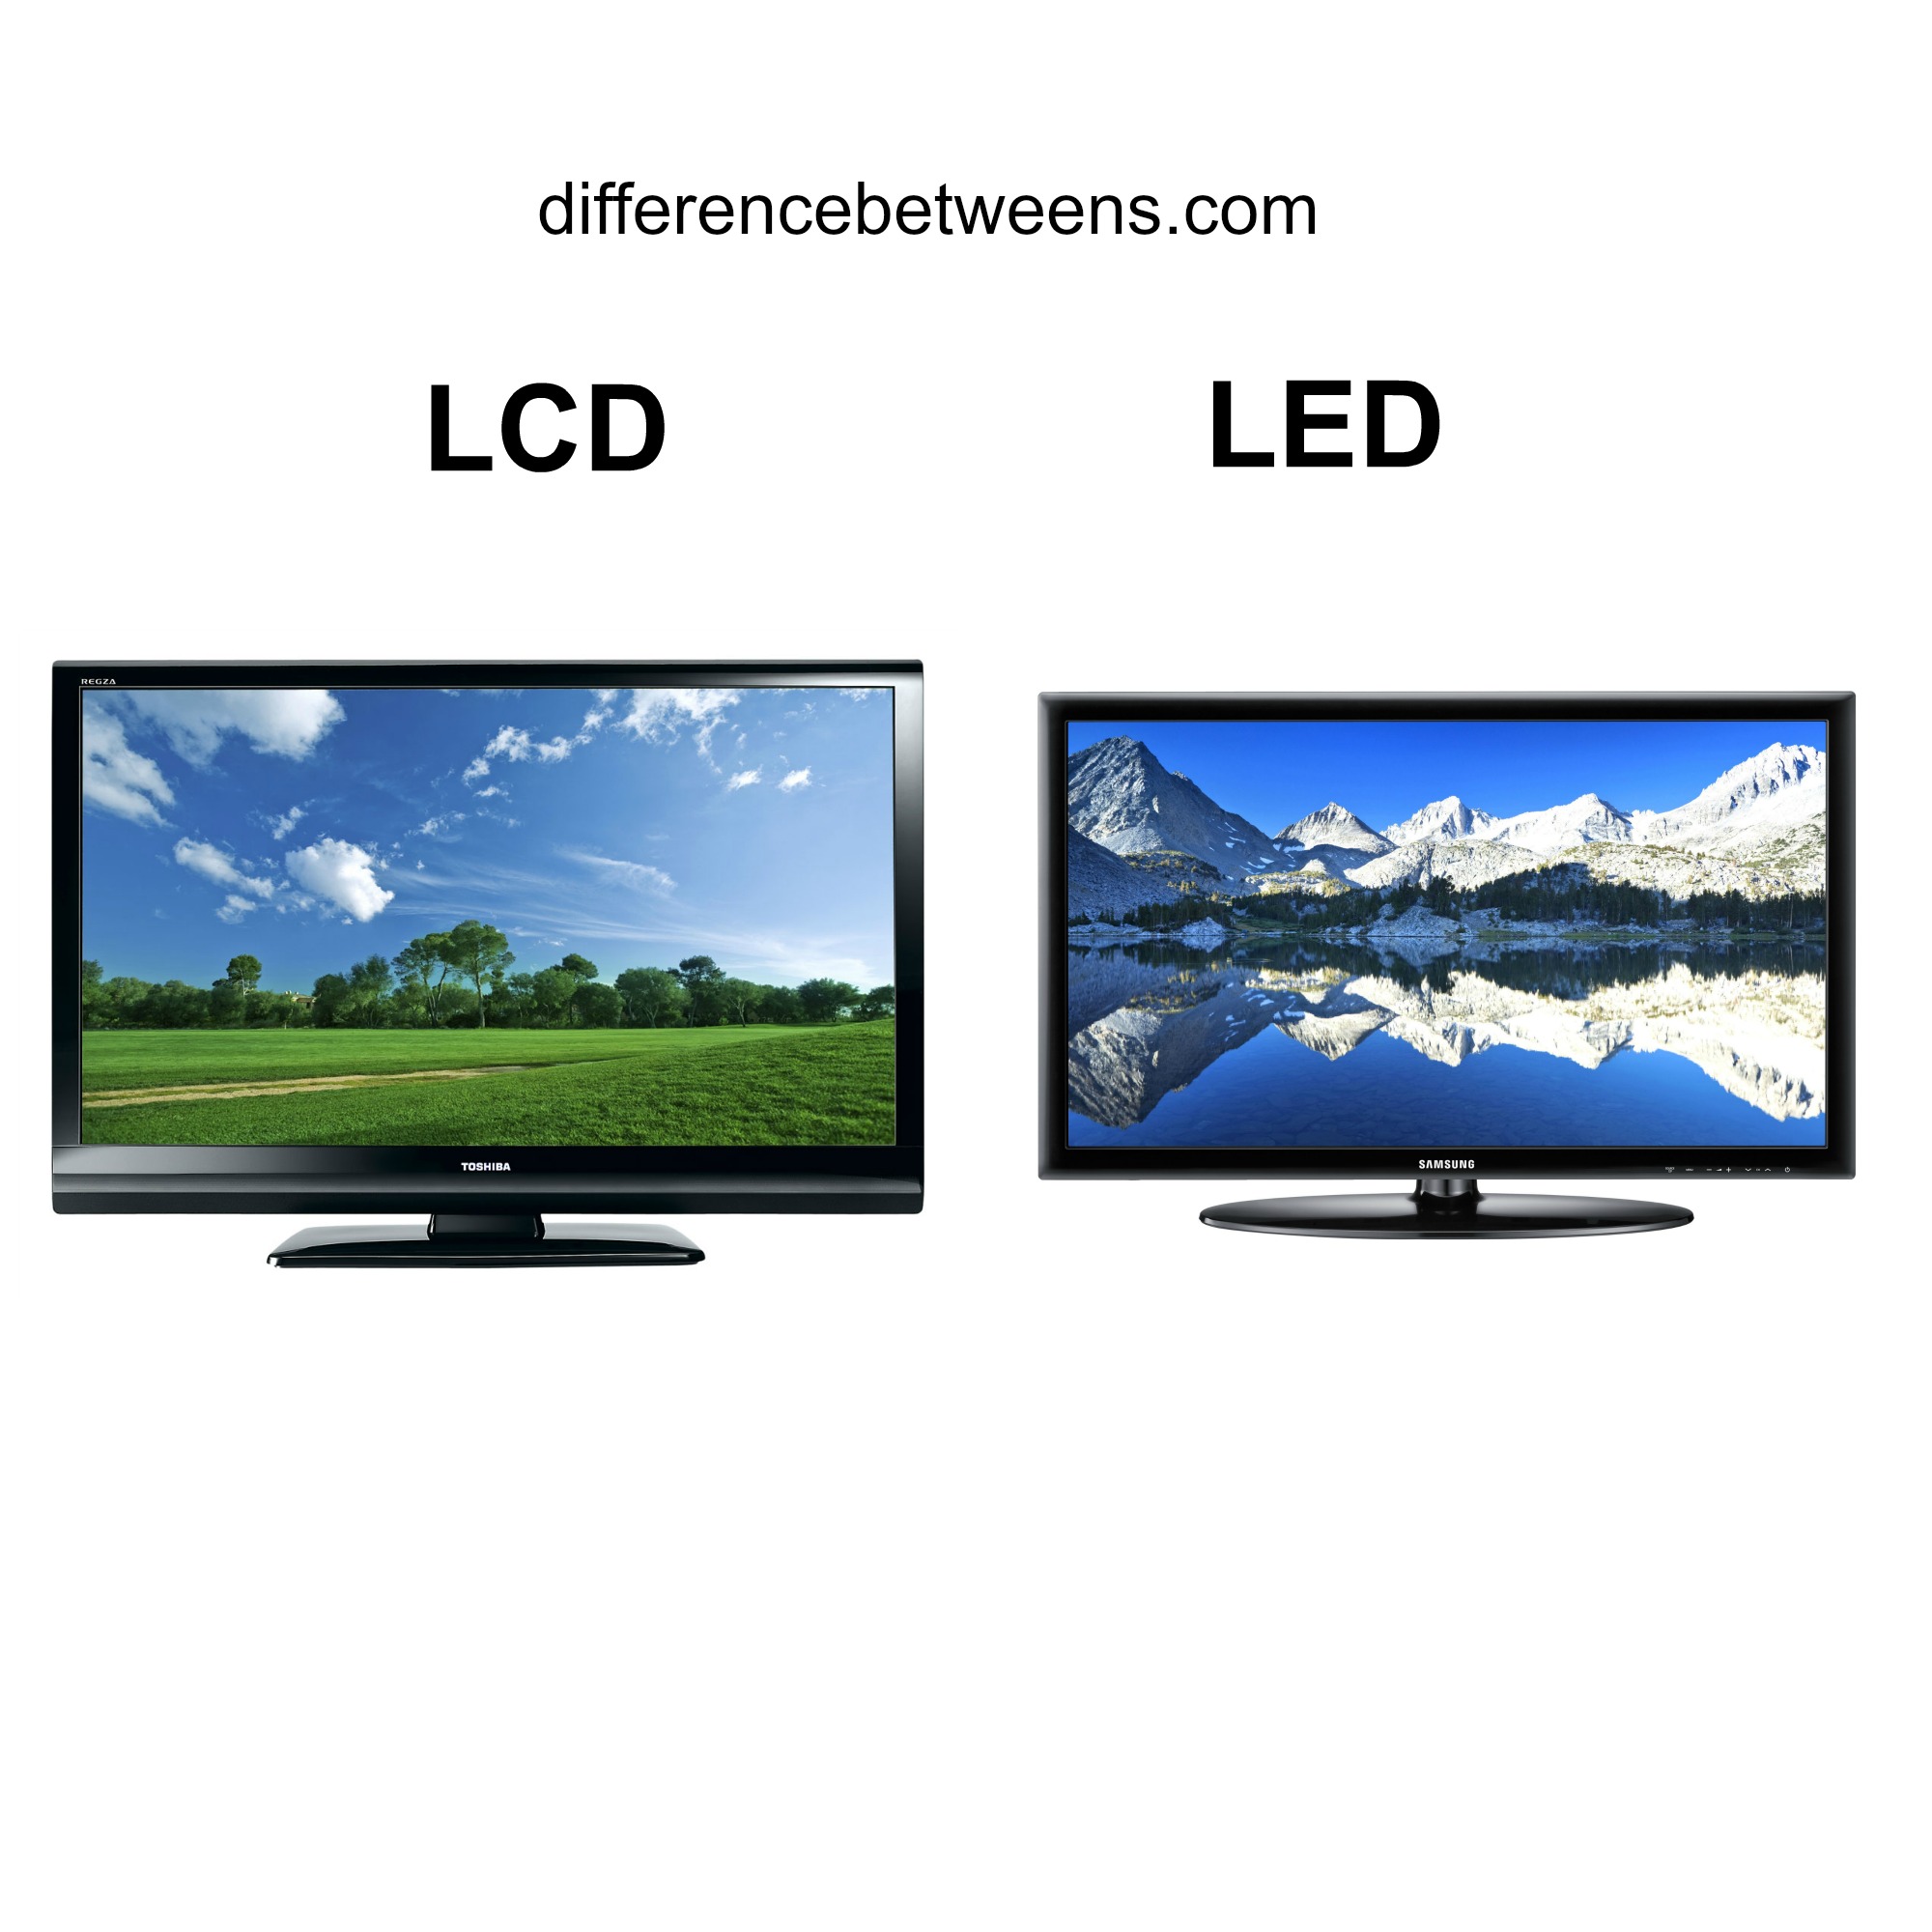 led versus lcd tv reviews